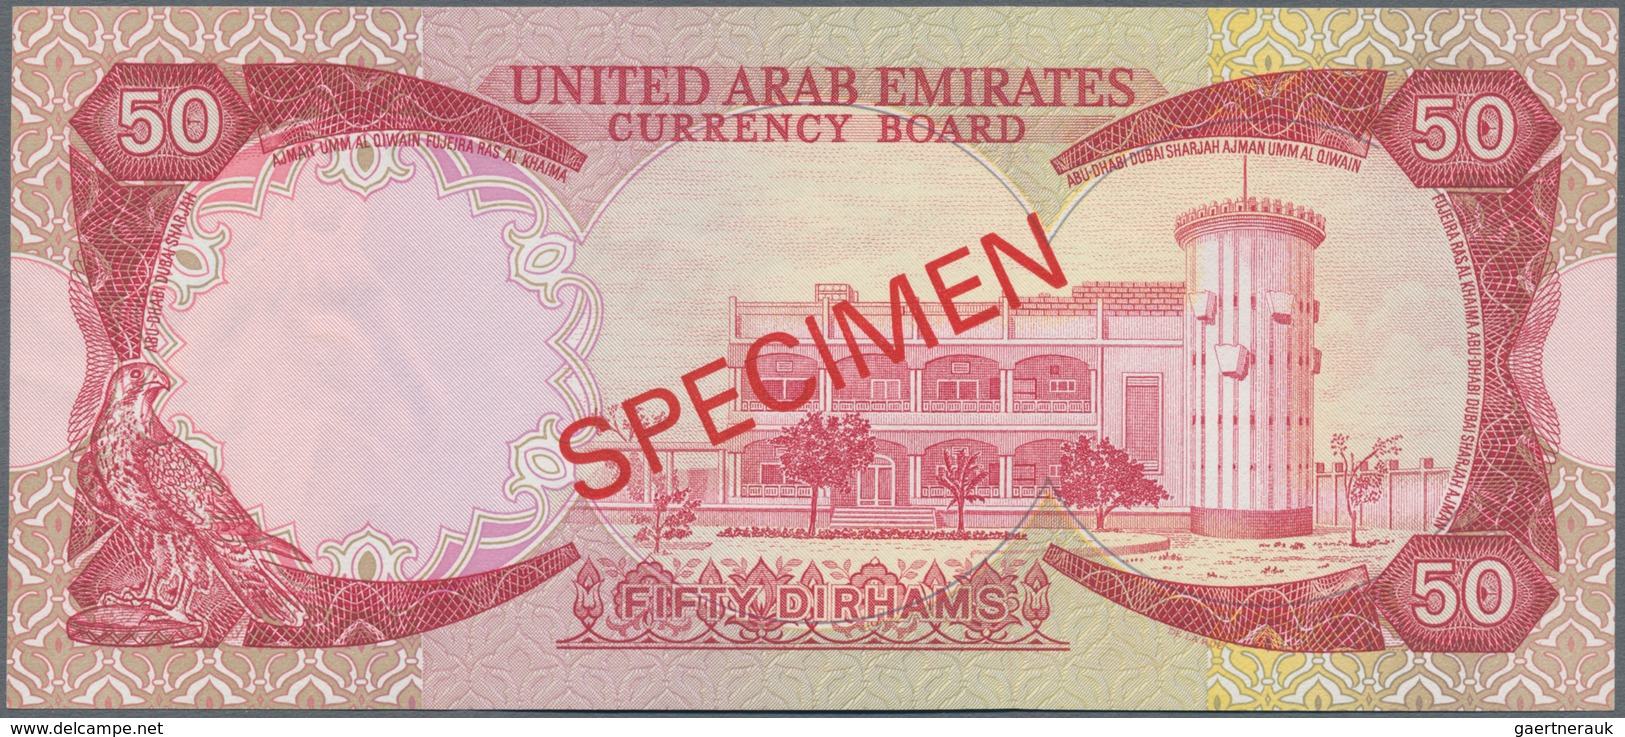 United Arab Emirates / Vereinigte Arabische Emirate: United Arab Emirates Currency Board 50 Dirhams - Emiratos Arabes Unidos